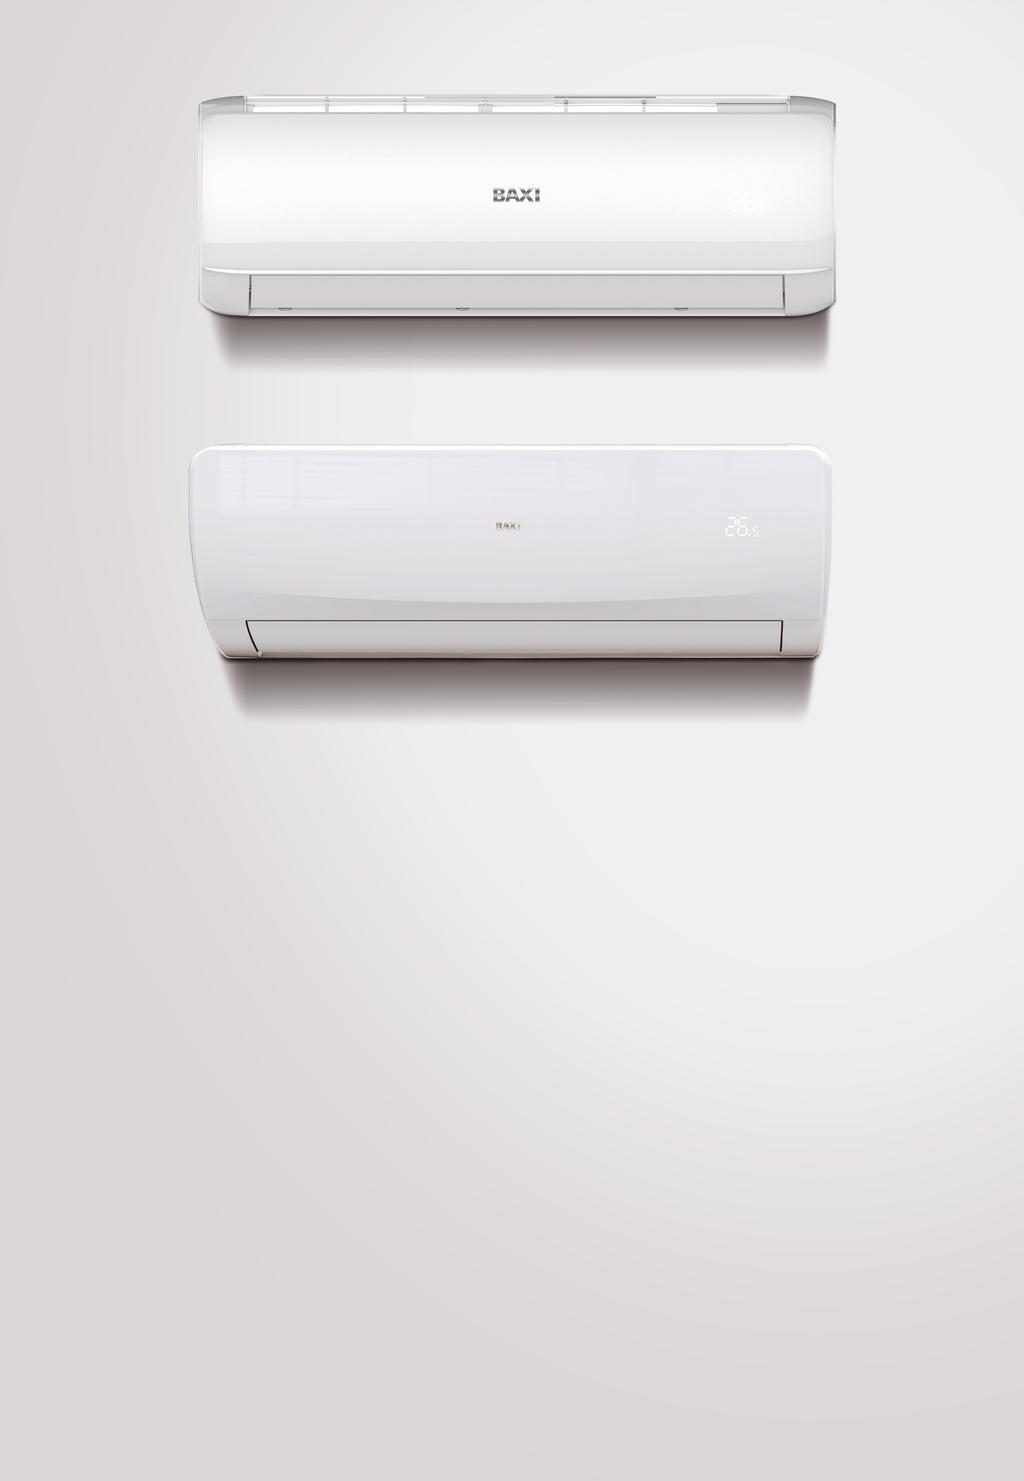 QUILAK MONO incluido ANORI MONO opcional* CONTROL Wi-Fi Preparados para ser controlados vía Wi-Fi a través de móvil o tablet desde la aplicación Air Connect disponible para Apple y Android.